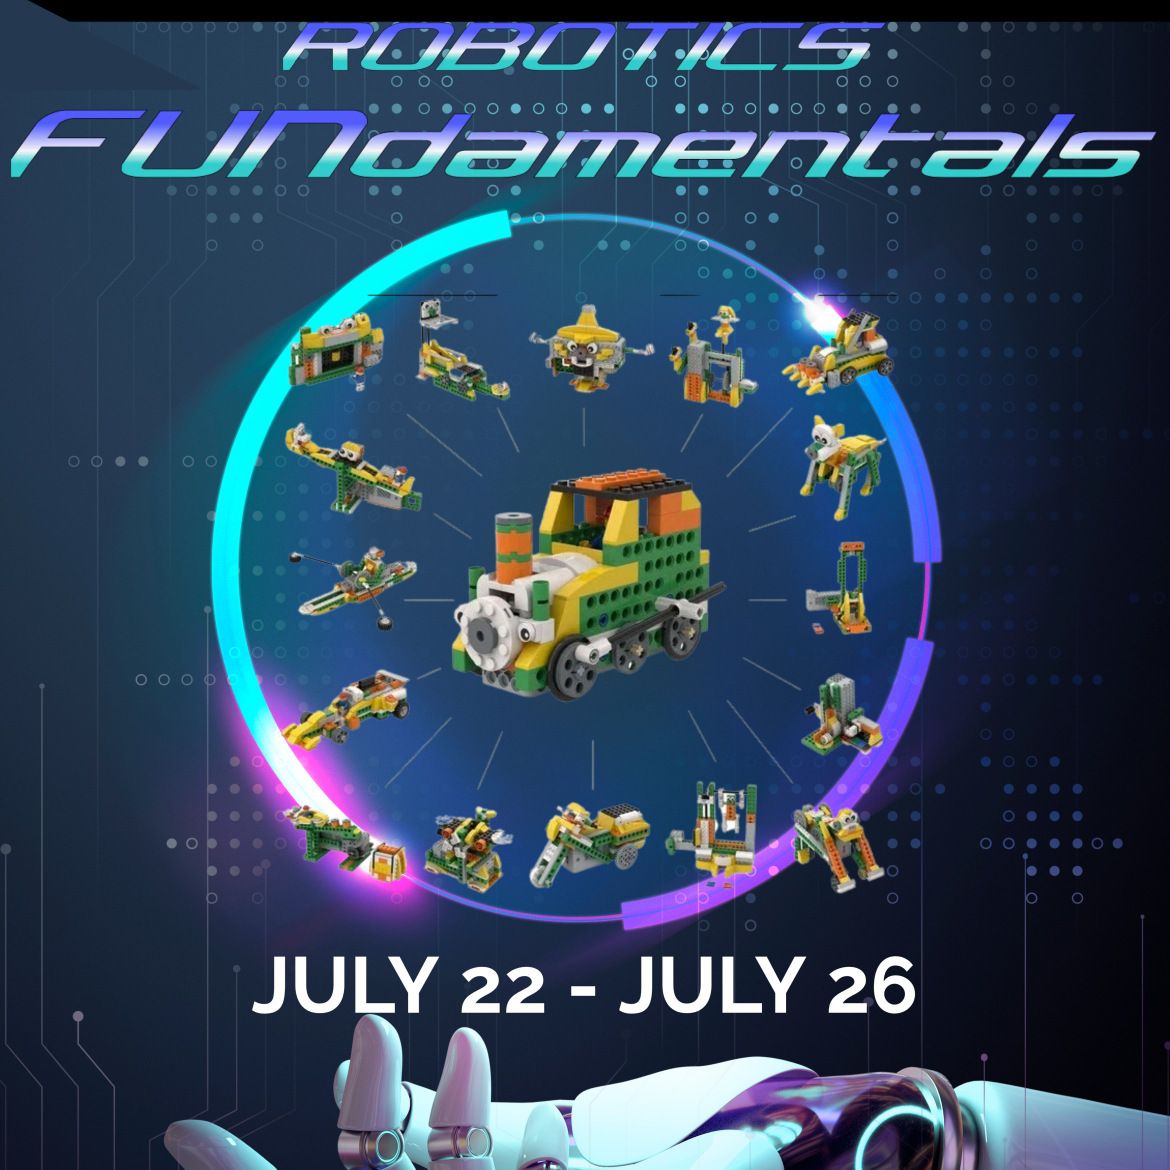 Code4Bots Robotics FUNdamentals Full-Day Summer Camp